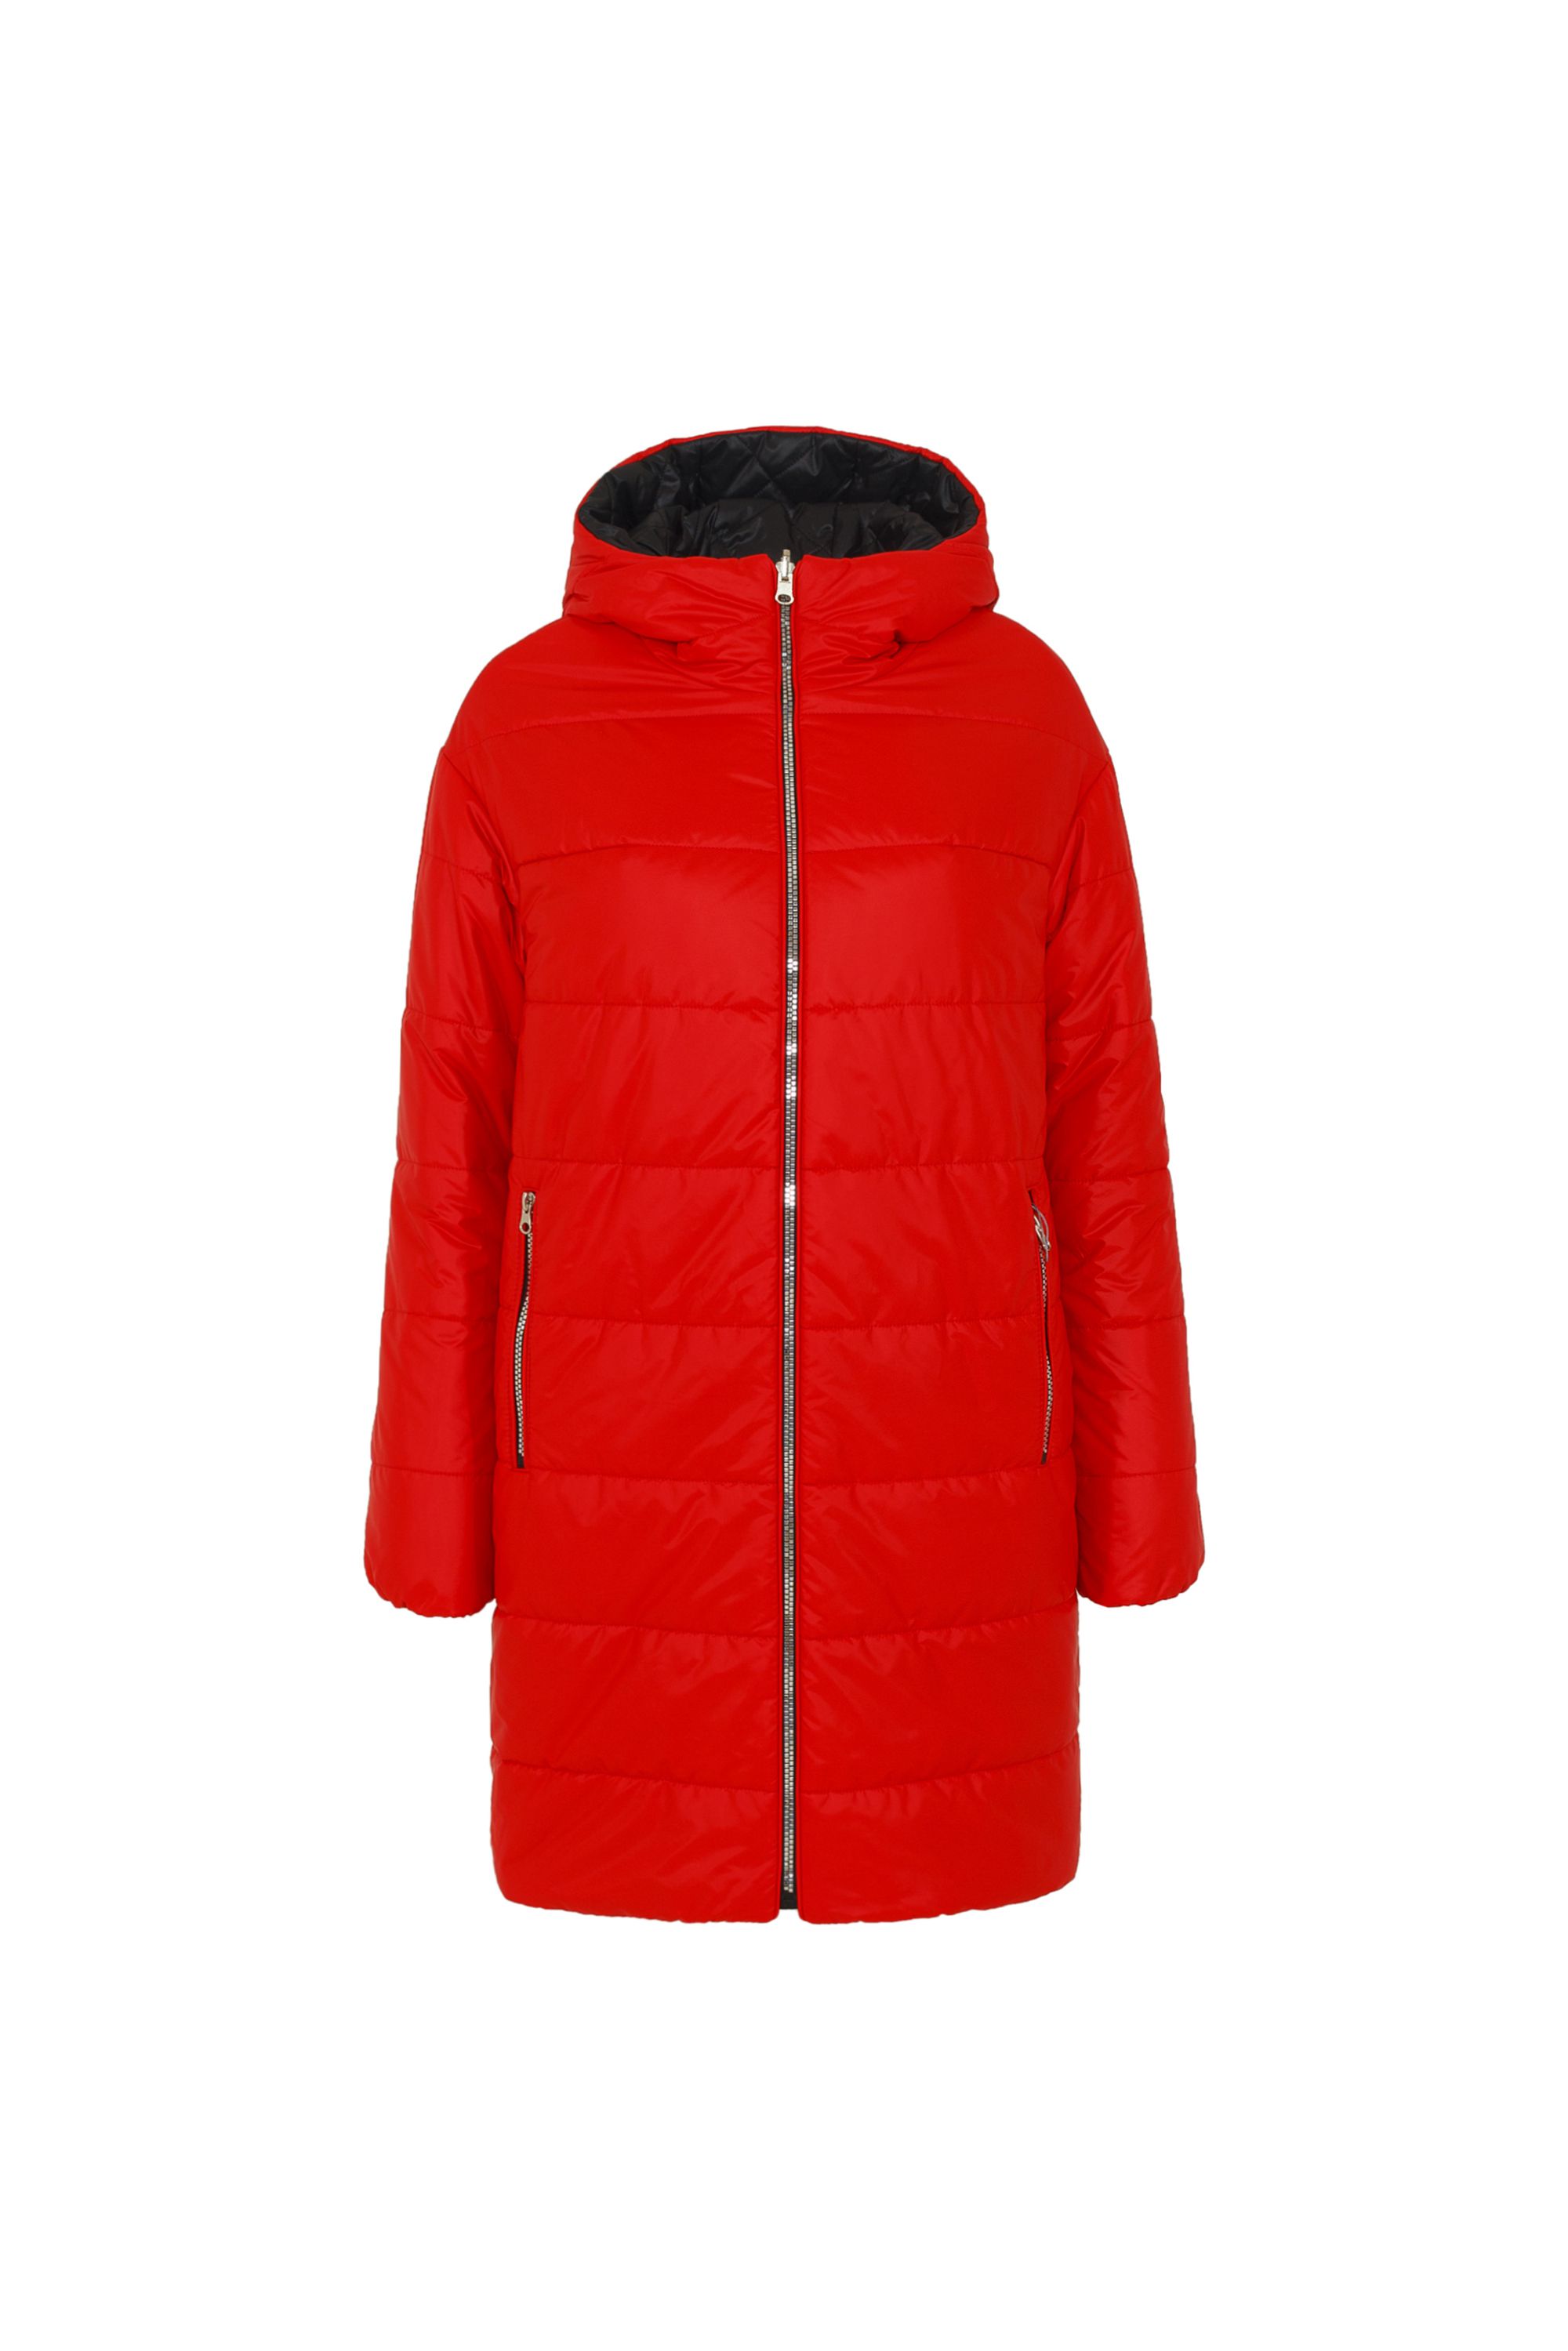 Пальто женское плащевое утепленное 5-11105-2